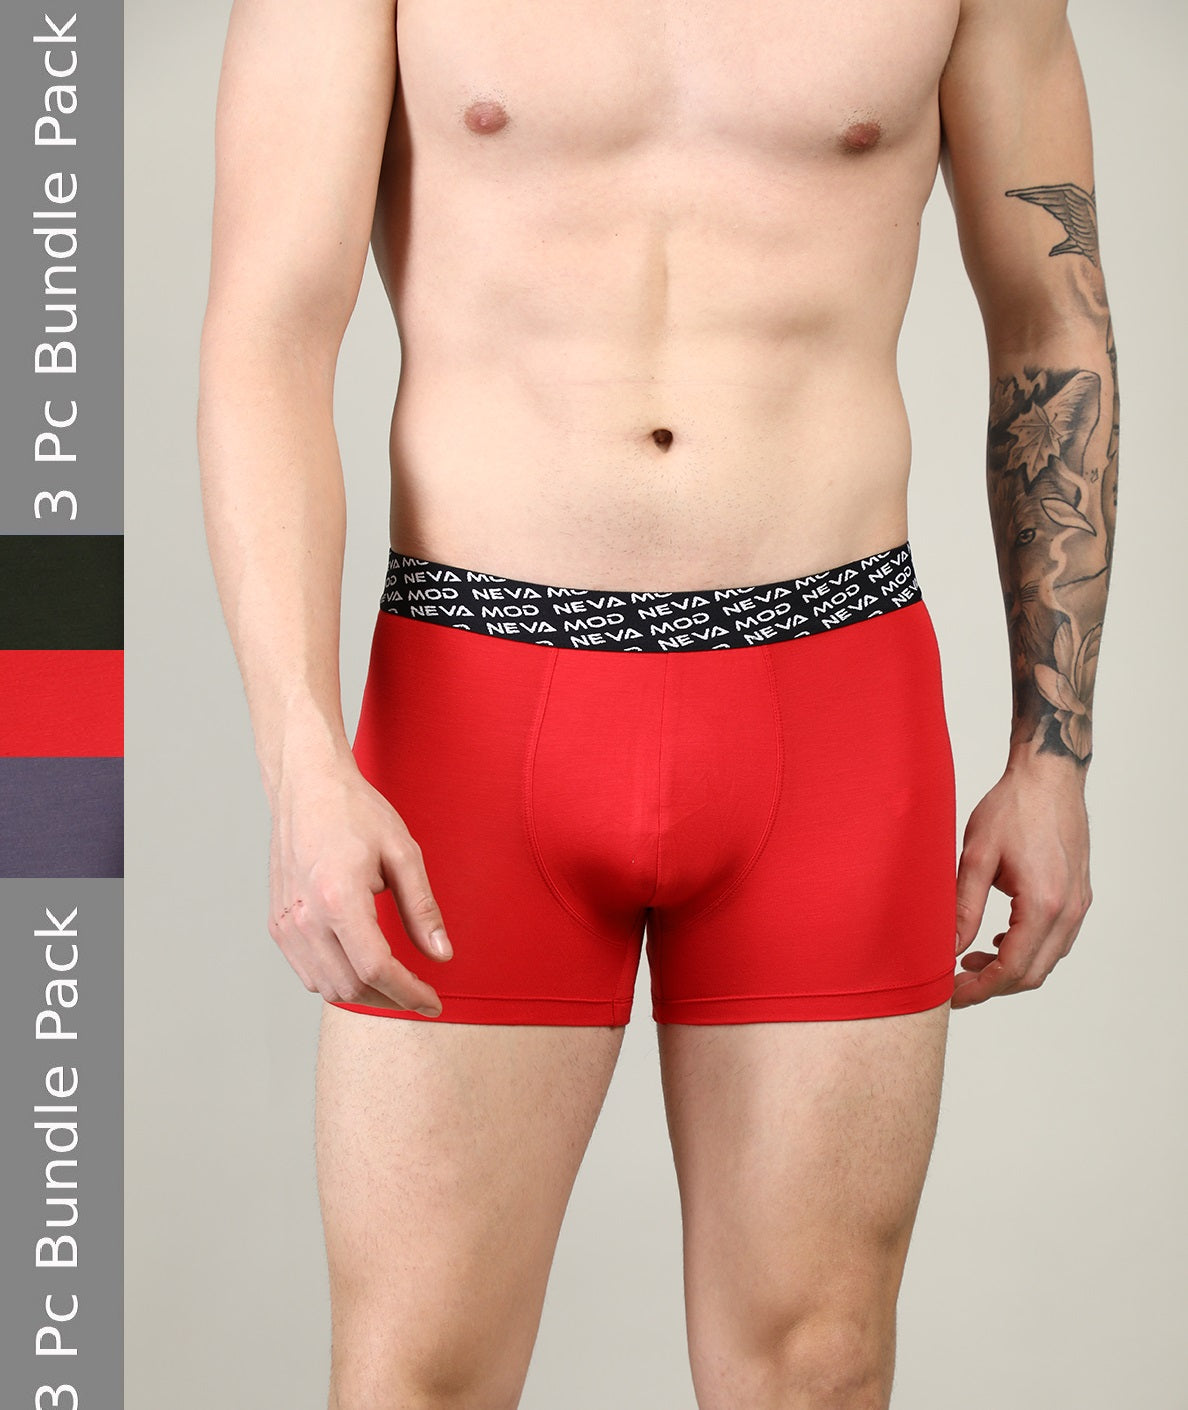 Neva Solid short trunks underwear for men